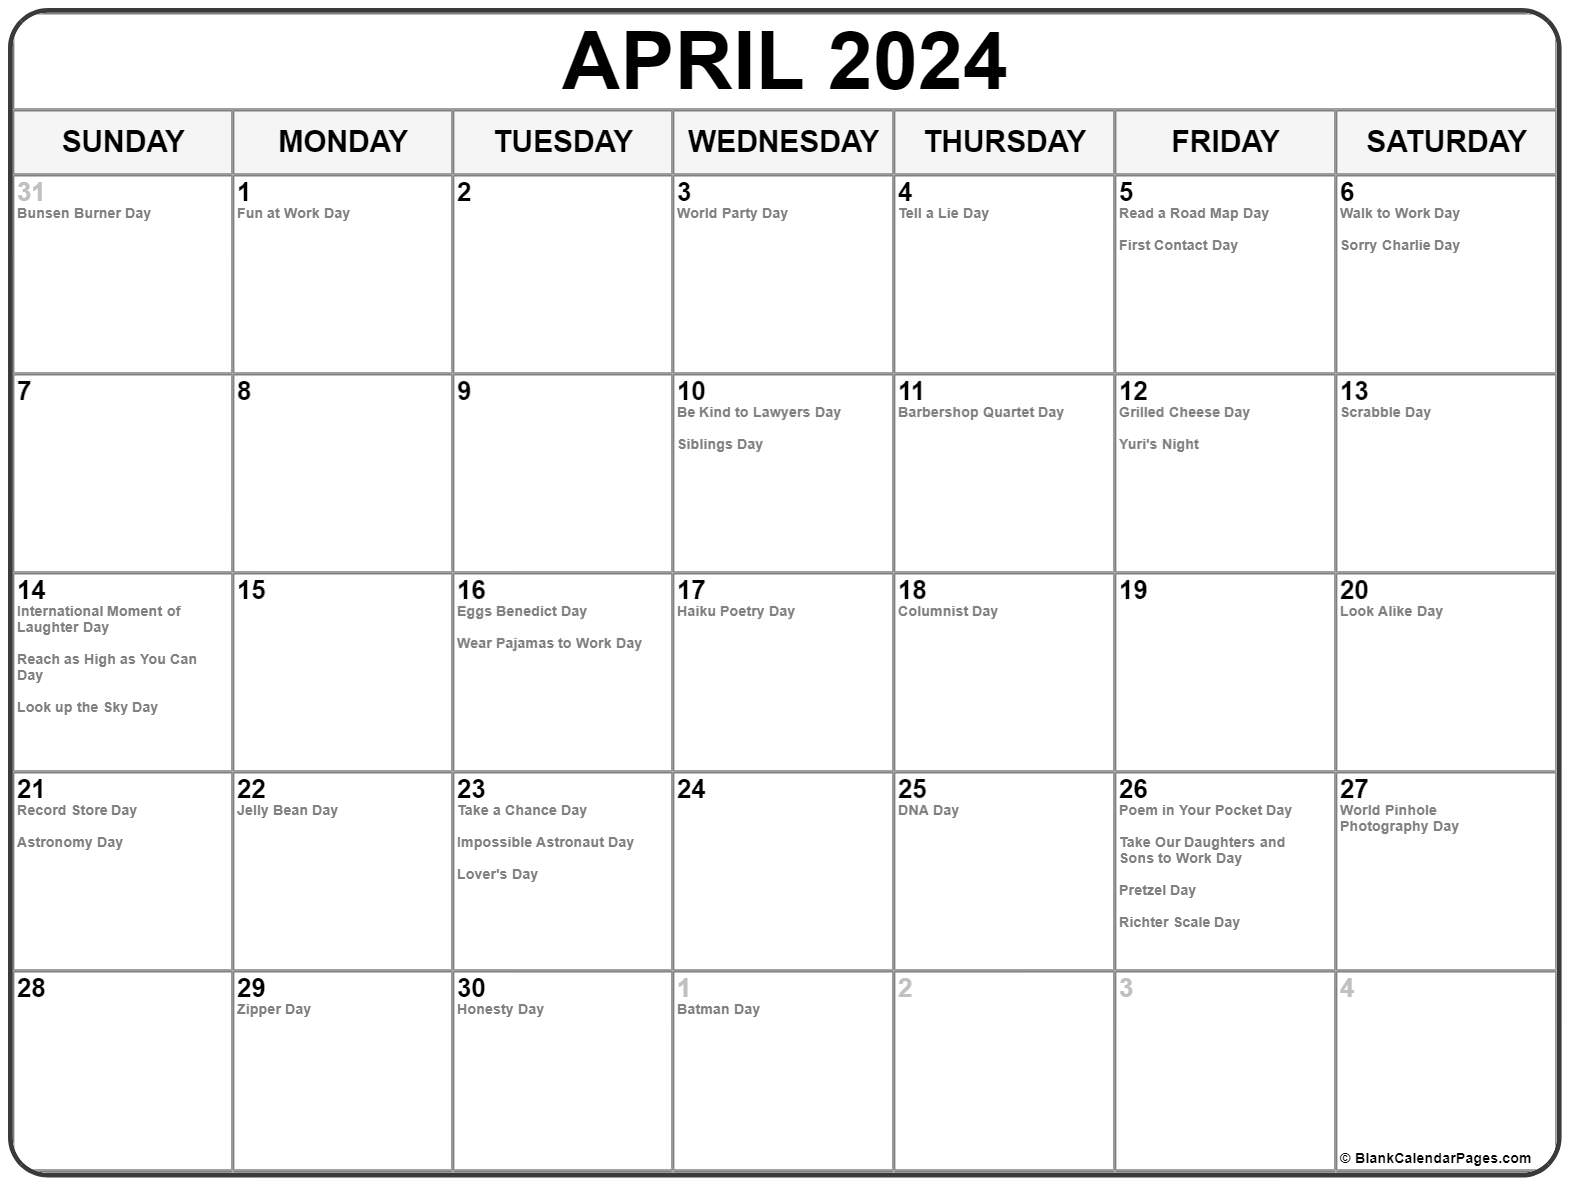 april-2023-calendar-with-canadian-holidays-pelajaran